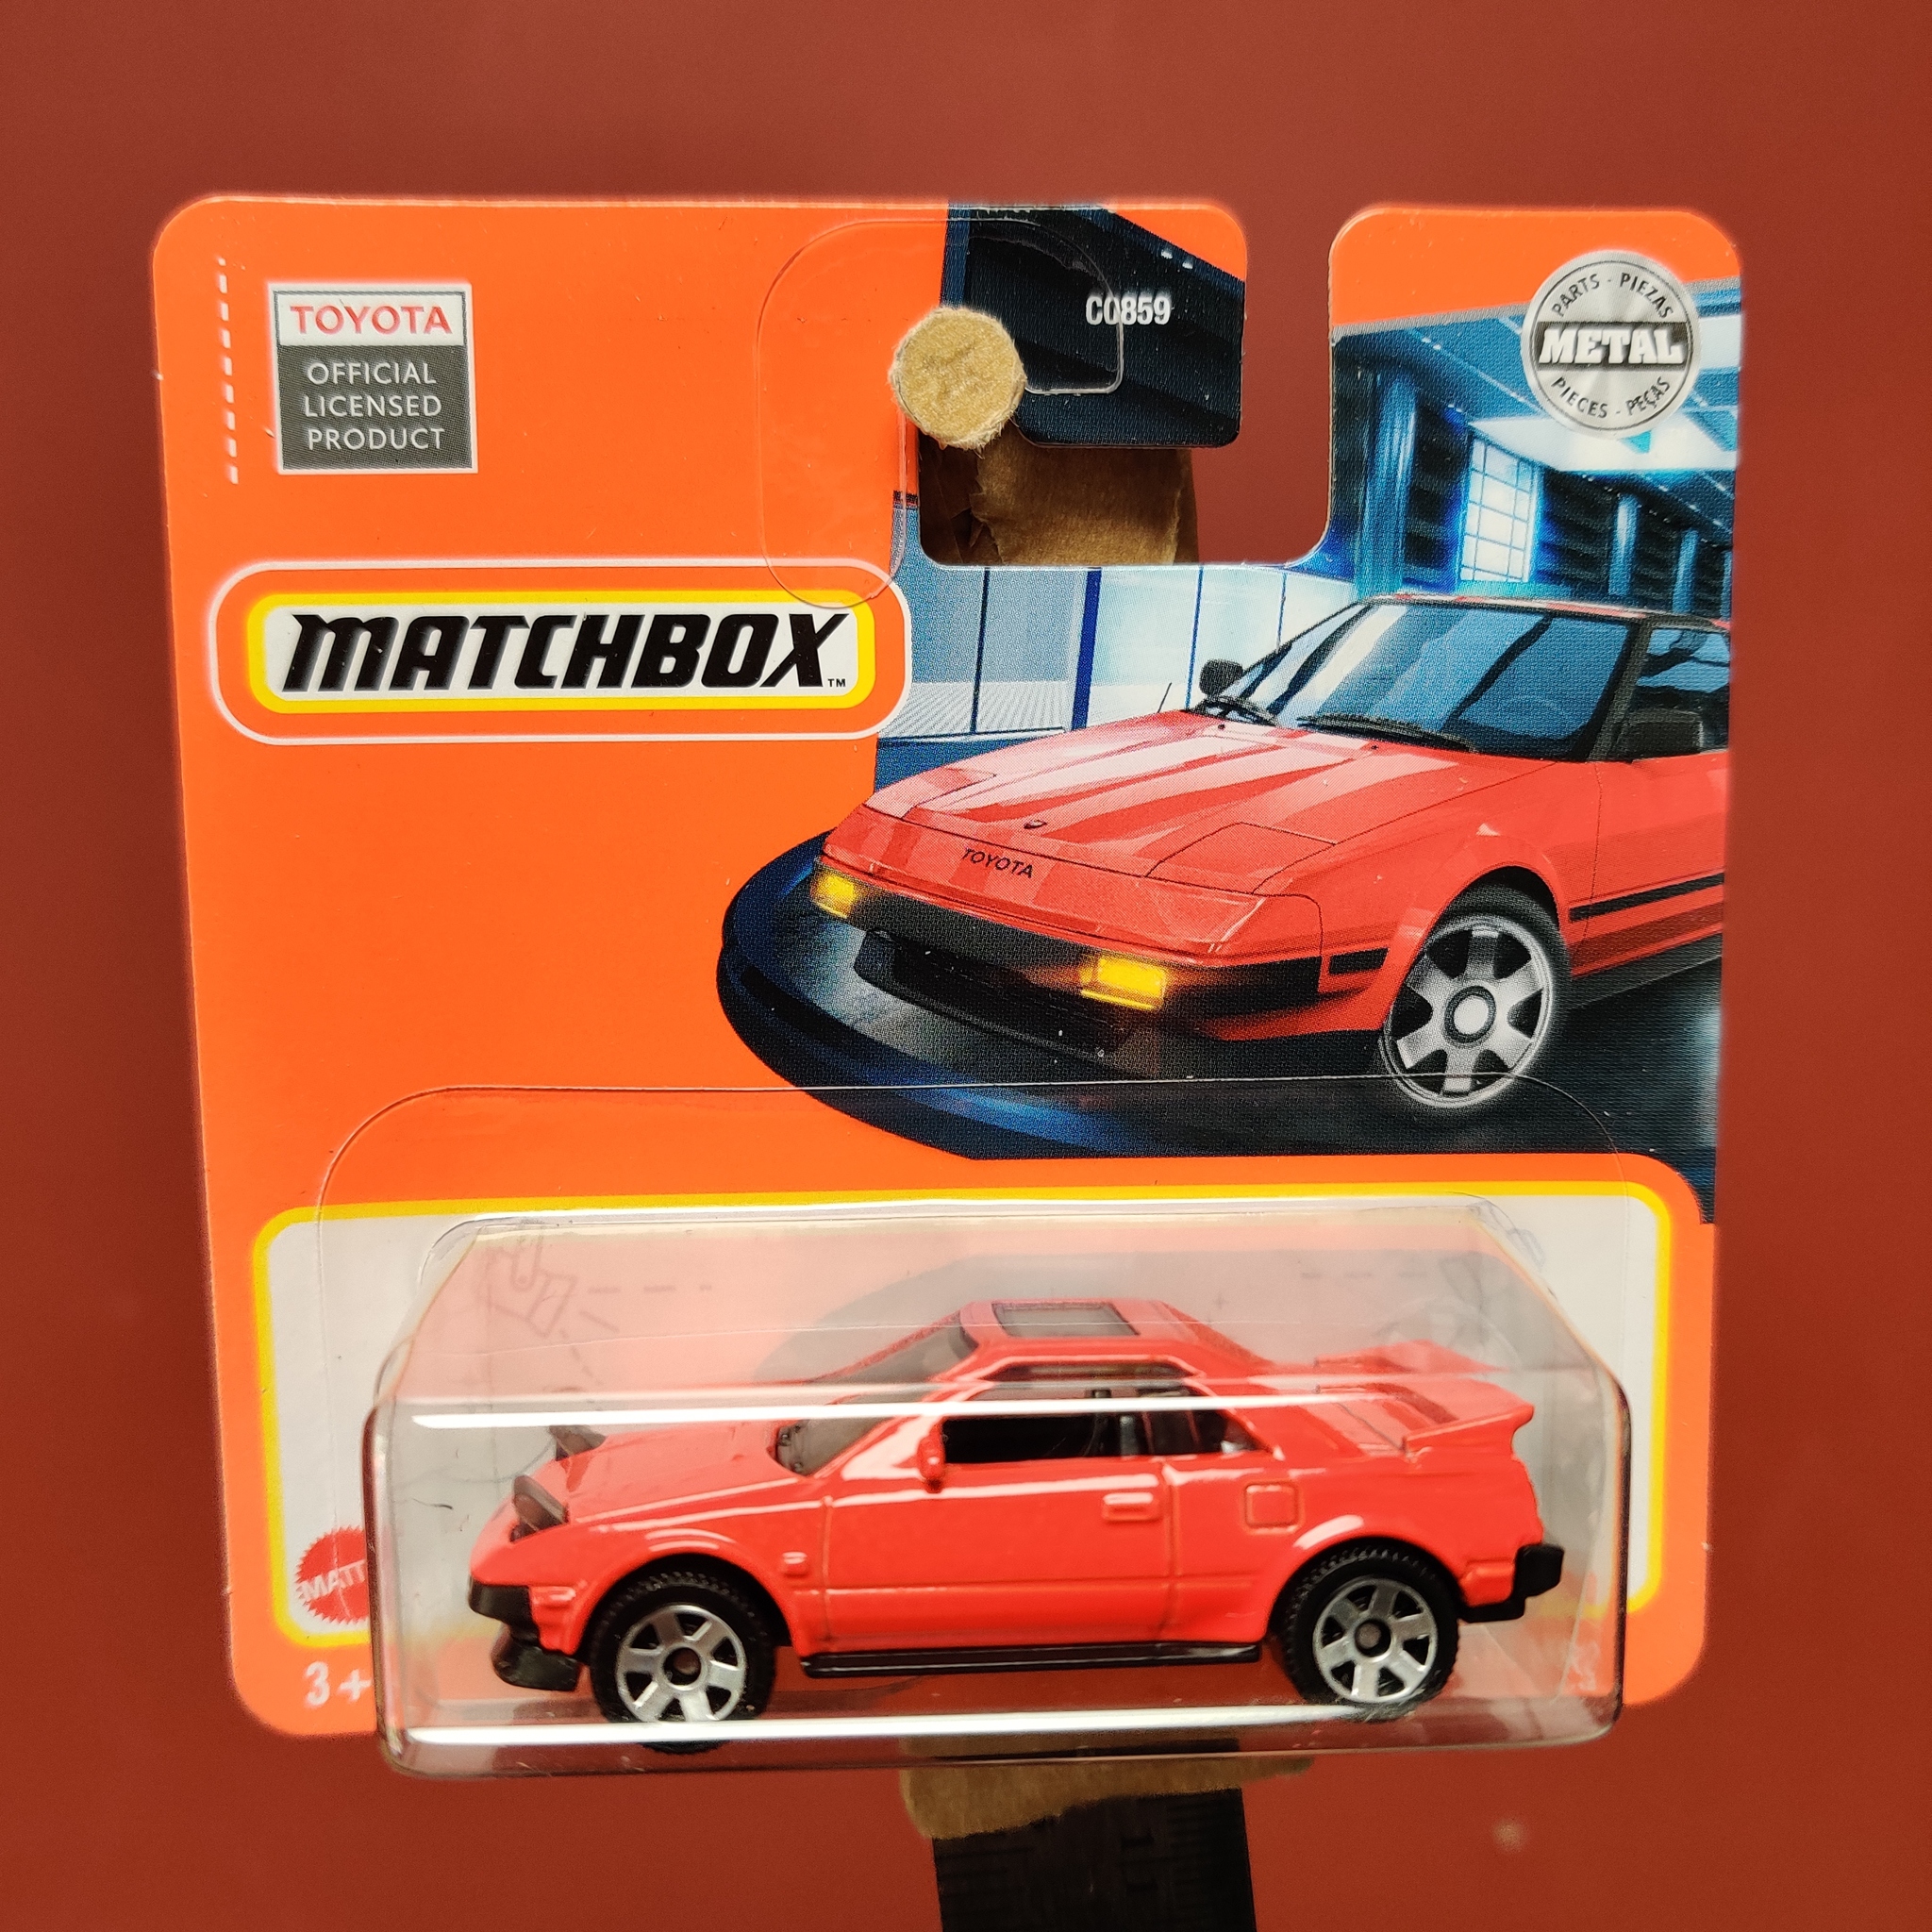 Skala 1/64 Matchbox - Toyota MR2 1984 - Uppfällda framlampor